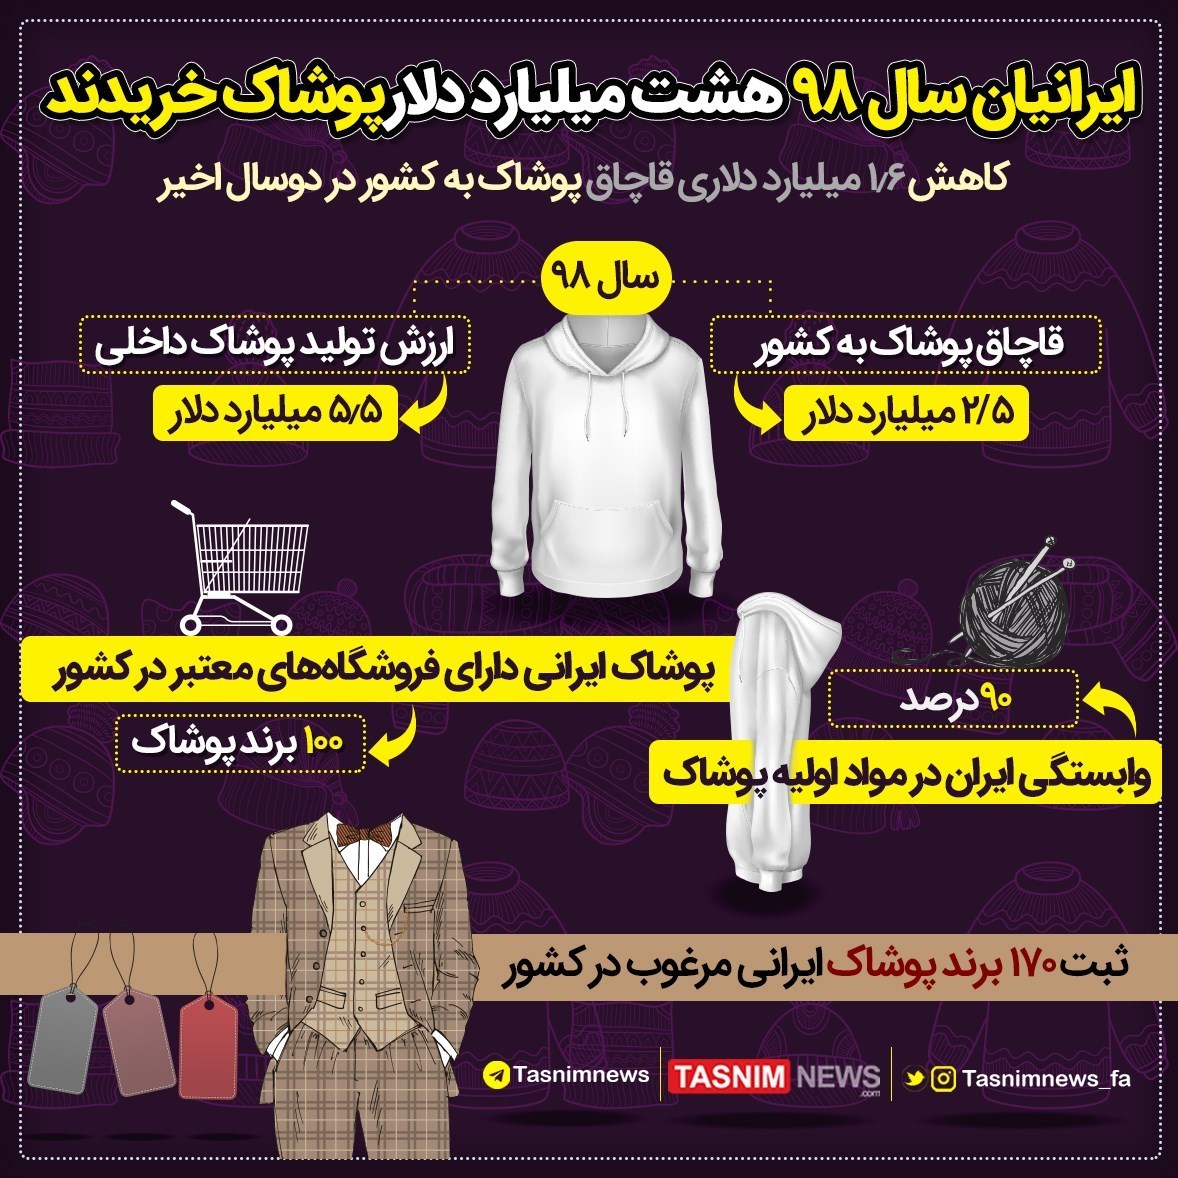 ایرانیان در سال ۹۸ چقدر برای لباس هزینه کردند؟ / عکس